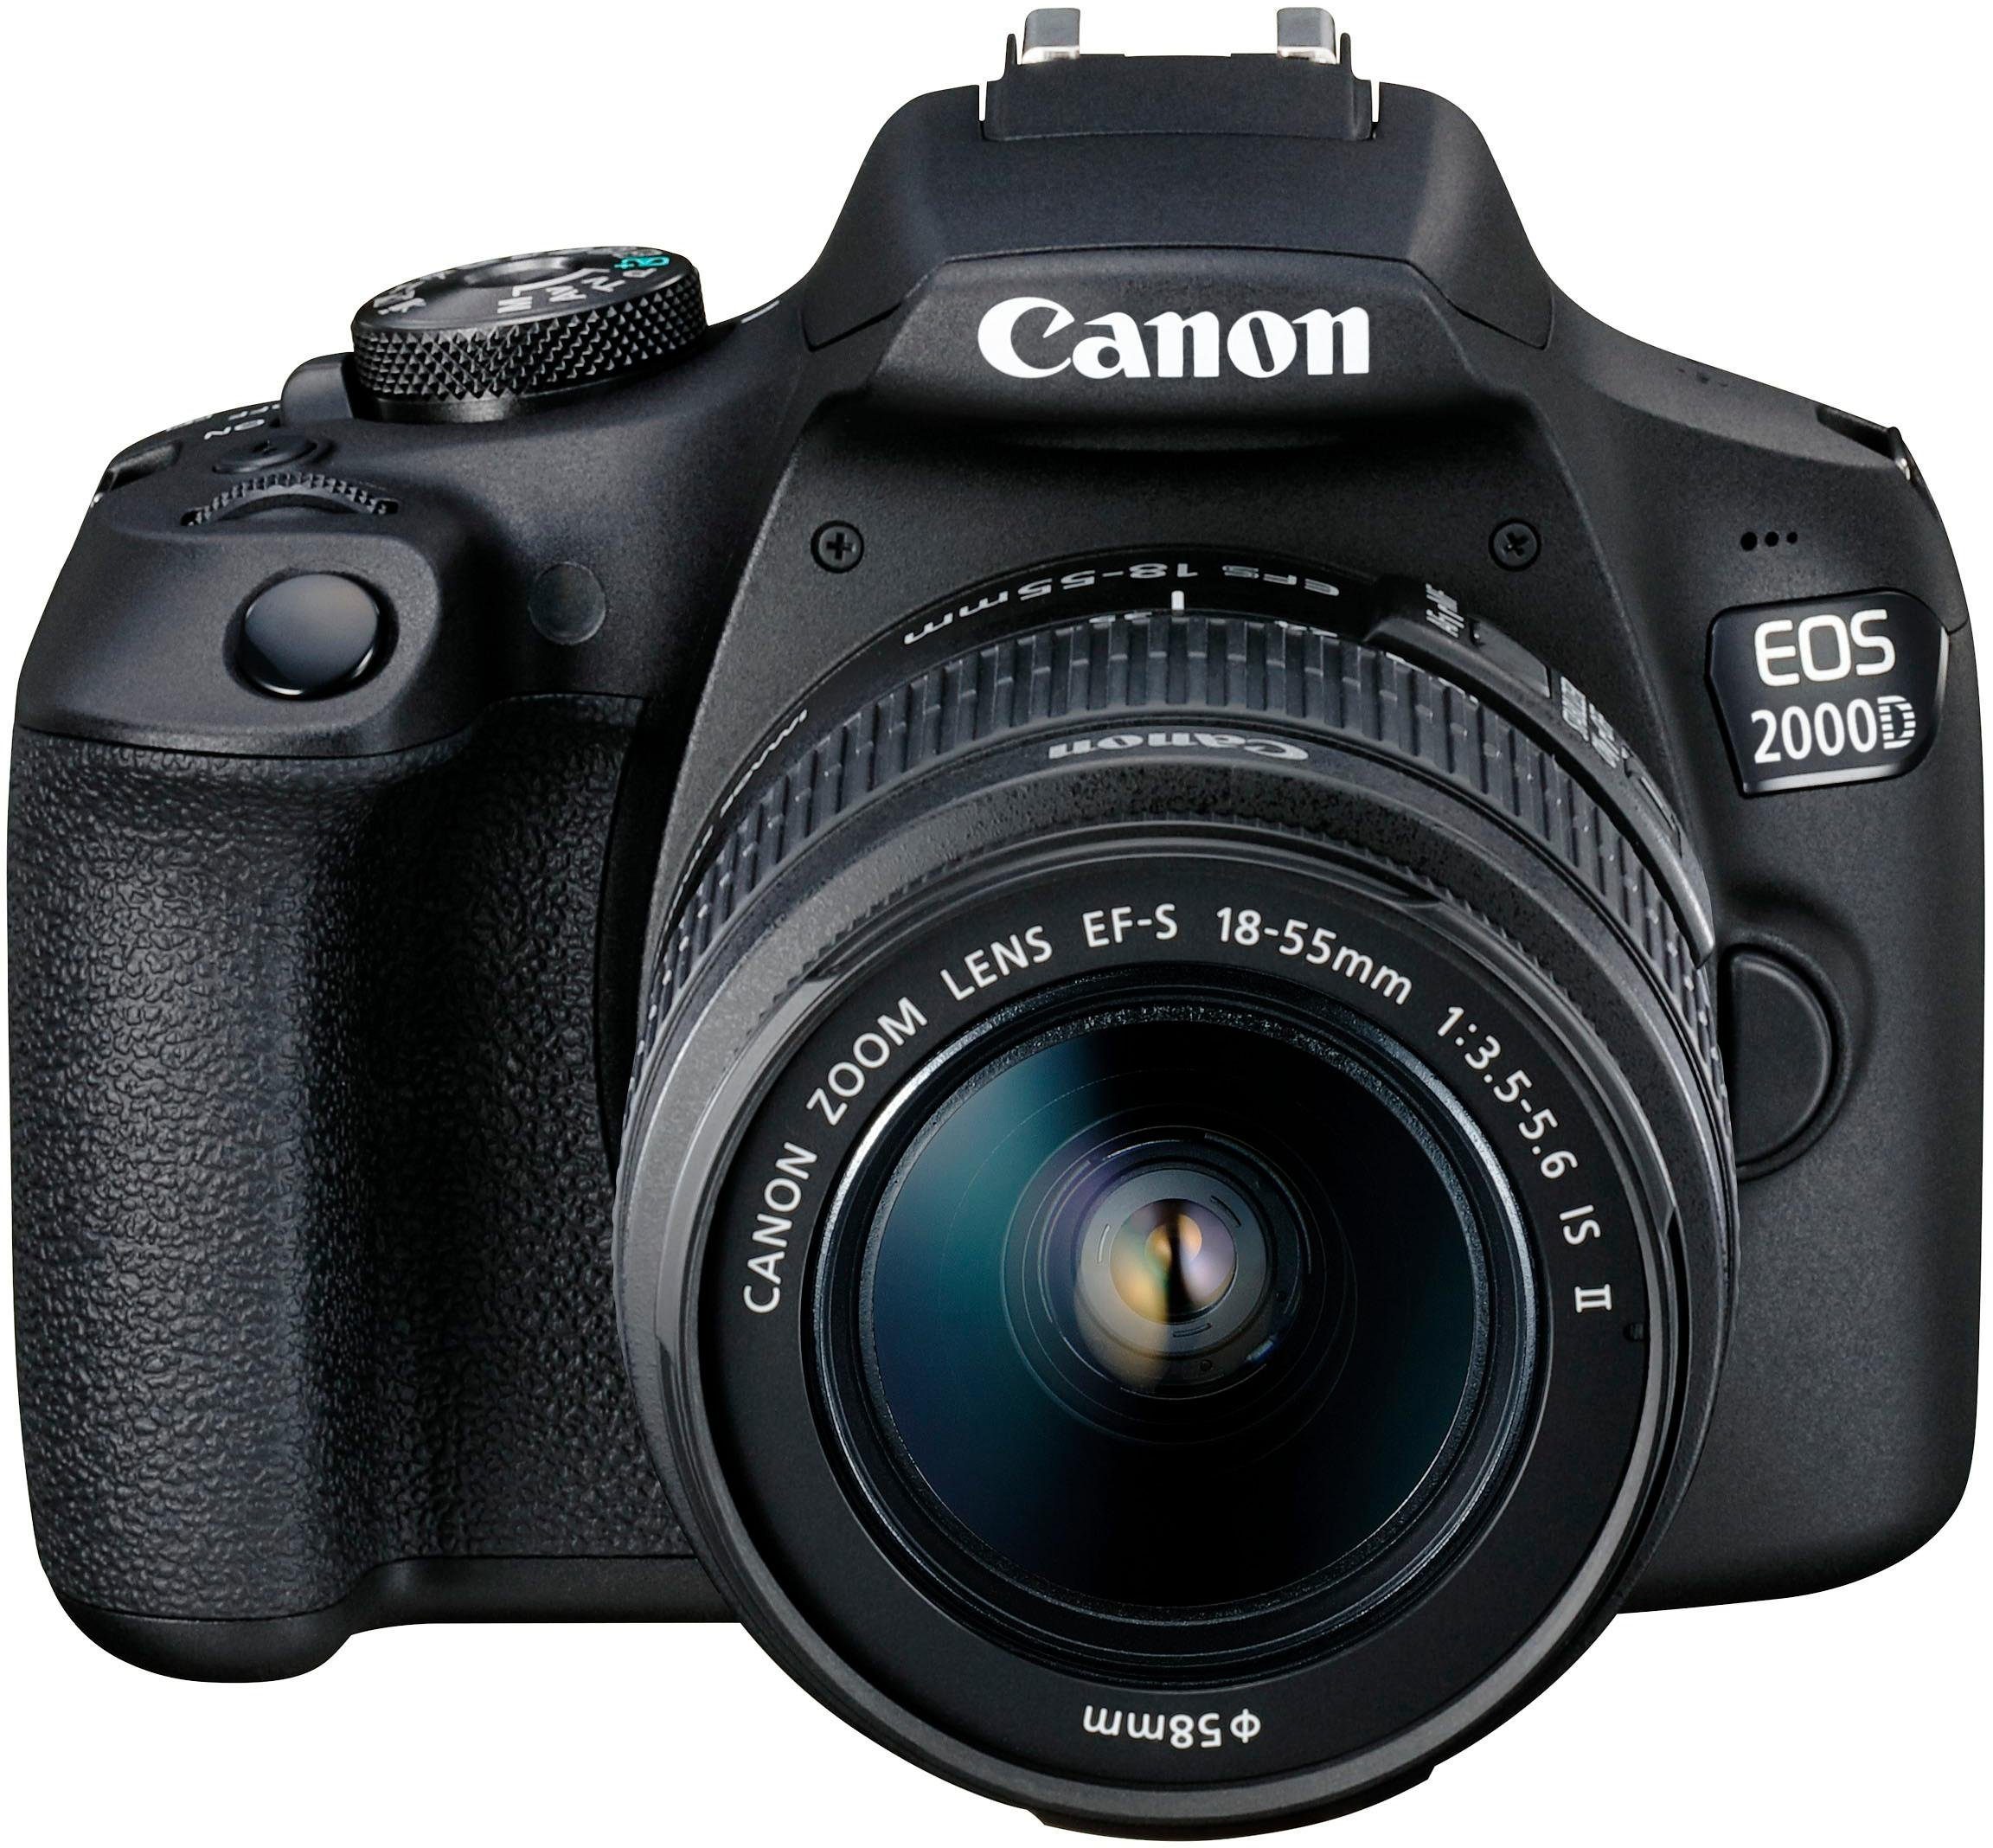 Canon EOS 2000D Kit Spiegelreflexkamera (EF-S 18-55 IS II, 24,1 MP, NFC,  WLAN (Wi-Fi), inkl. EF-S 18-55 IS II Objektiv), Inkl. Objektiv EF-S 18-55  mm IS II, Kameratasche und SD-Karte